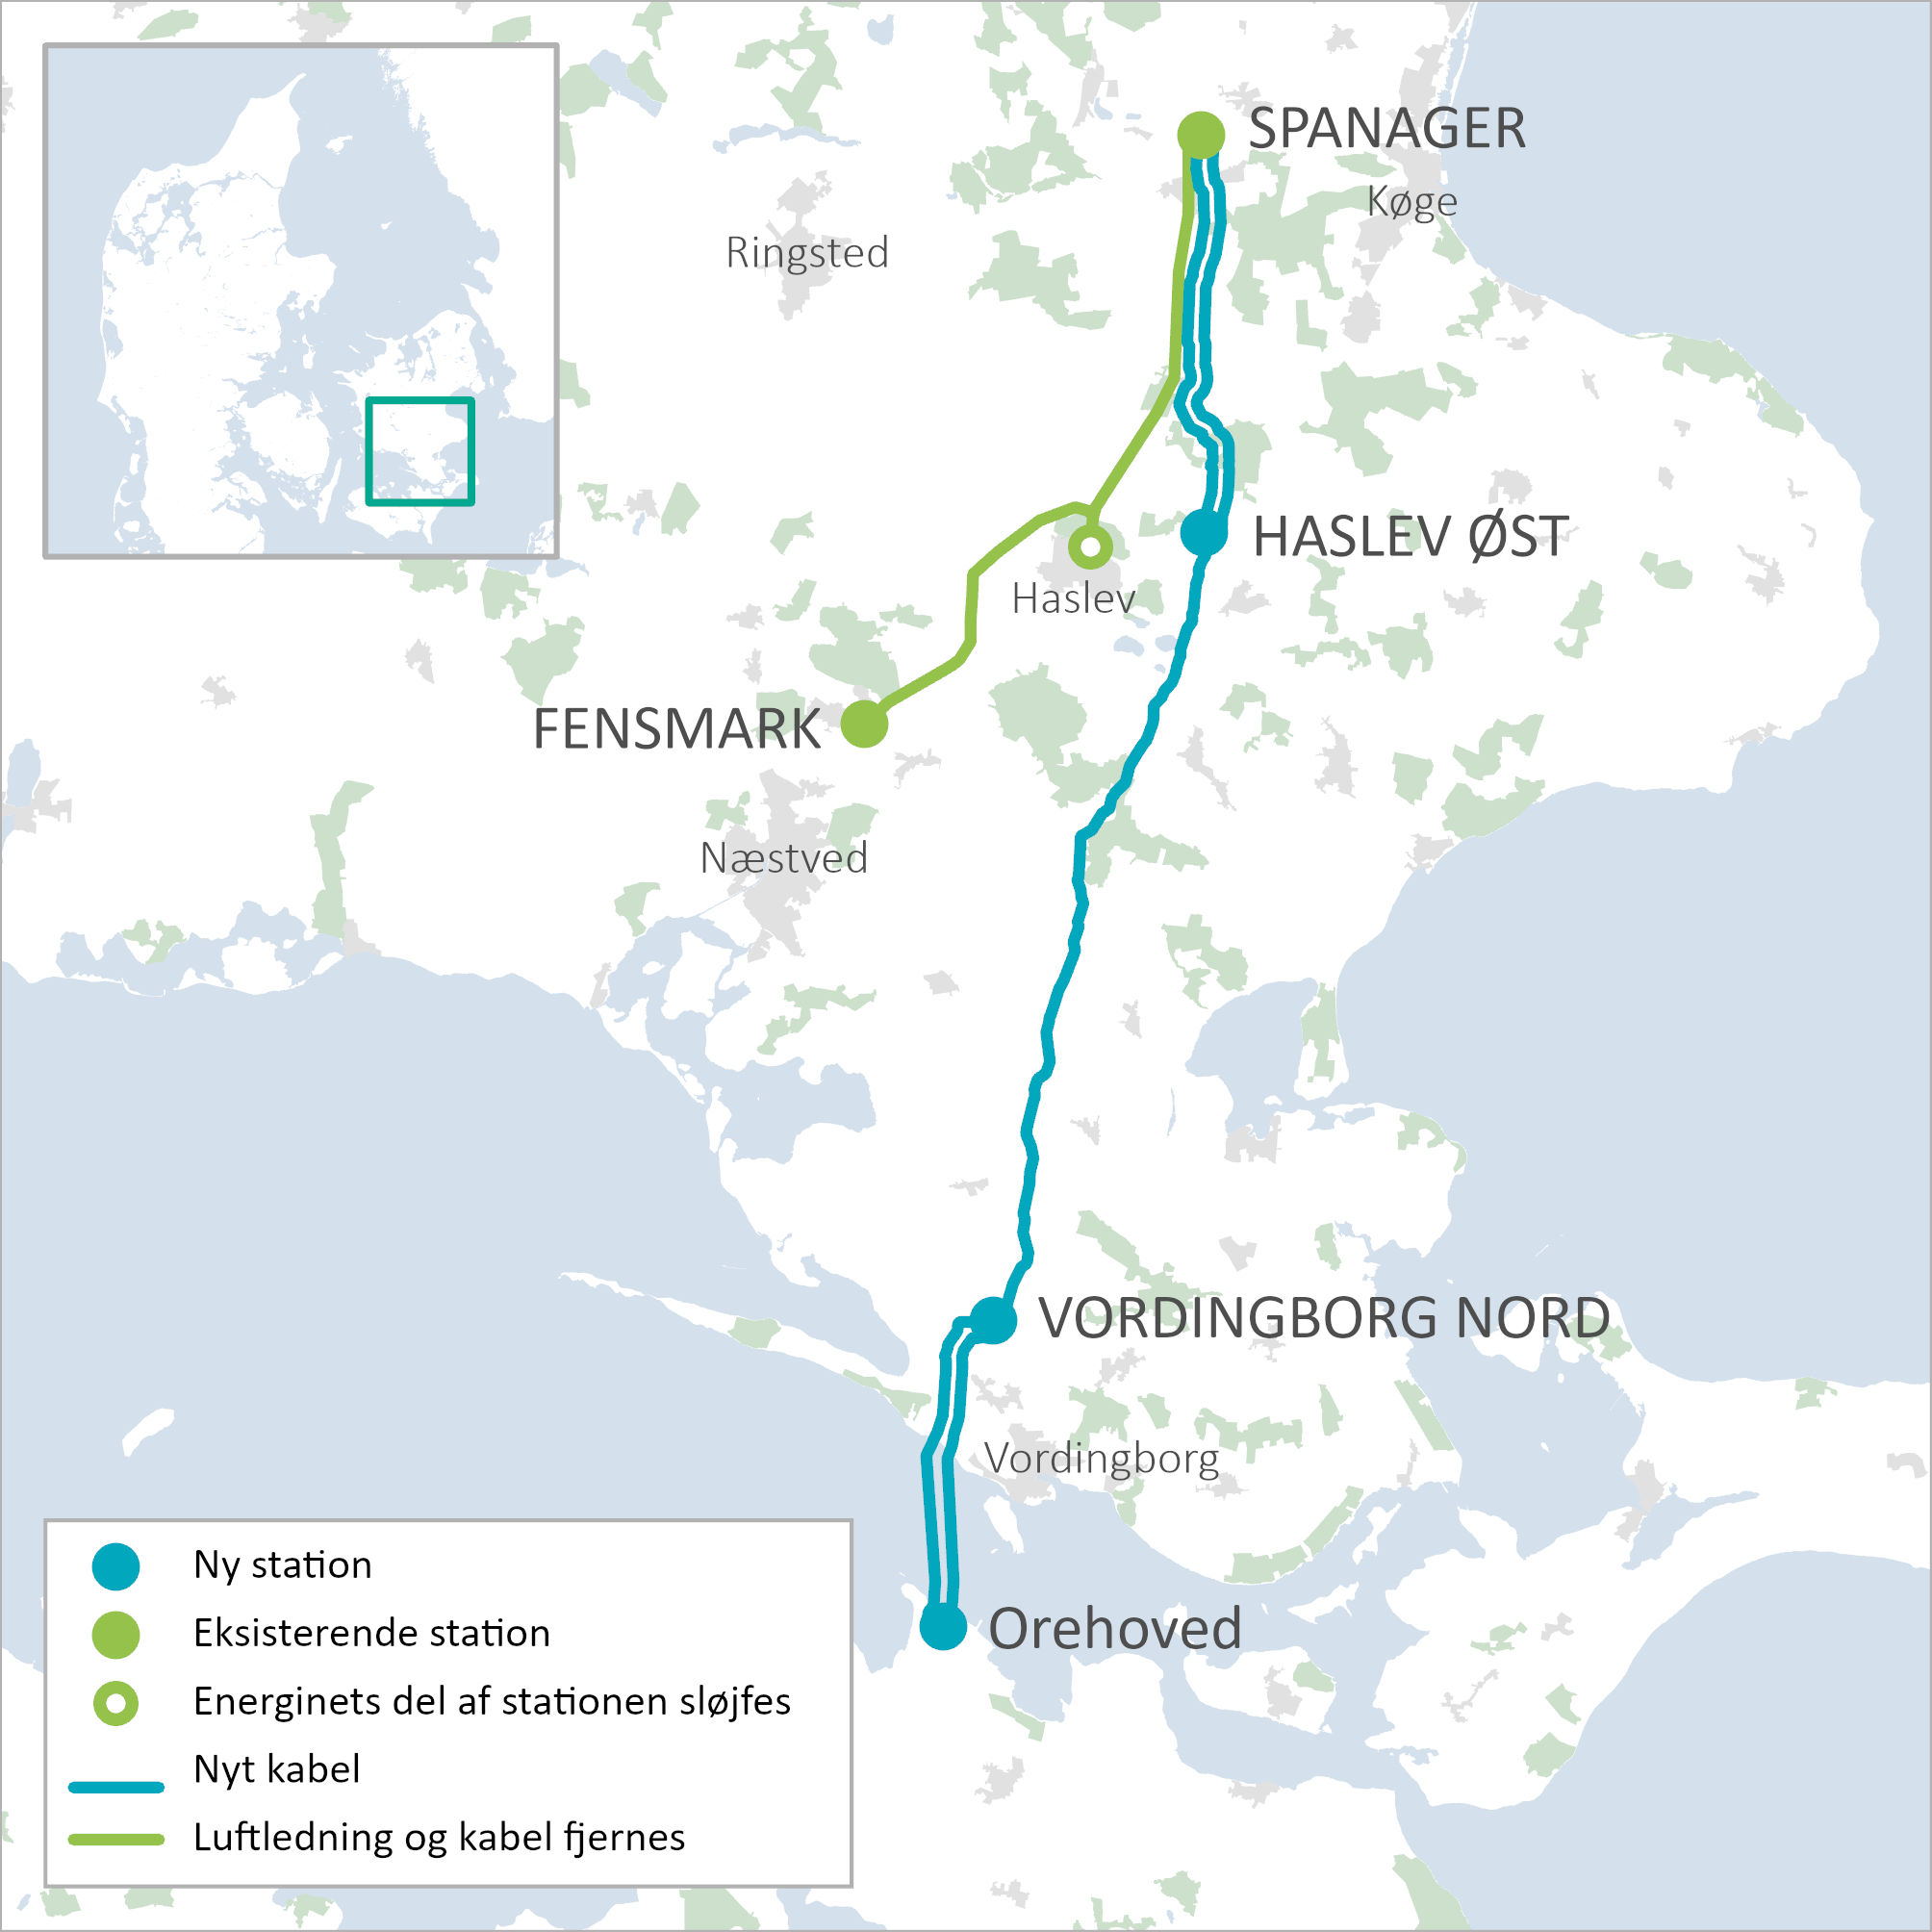 Kort der viser projektet fra Spanager ved Køge til Orehoved på Nordfalster